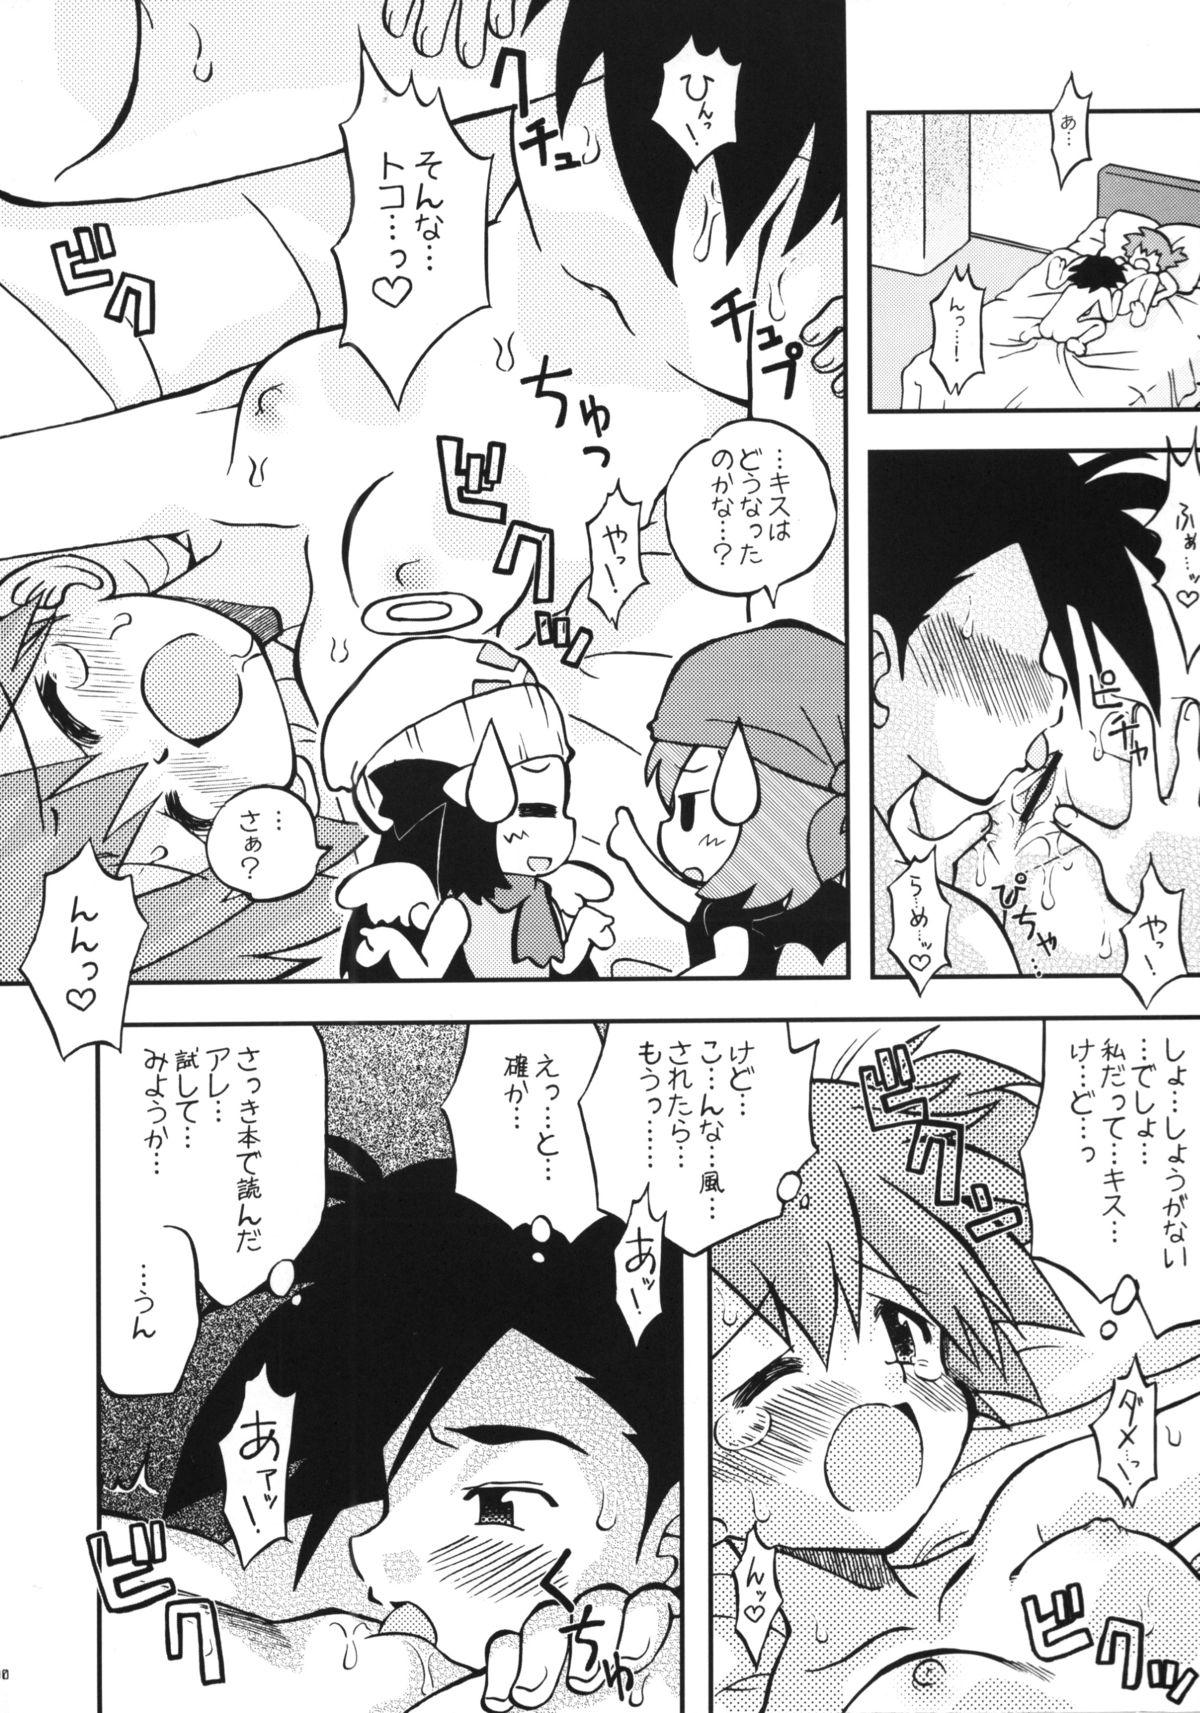 Dick Daremo Shiranai Monogatari no Tsuzuki - Pokemon Mamada - Page 9